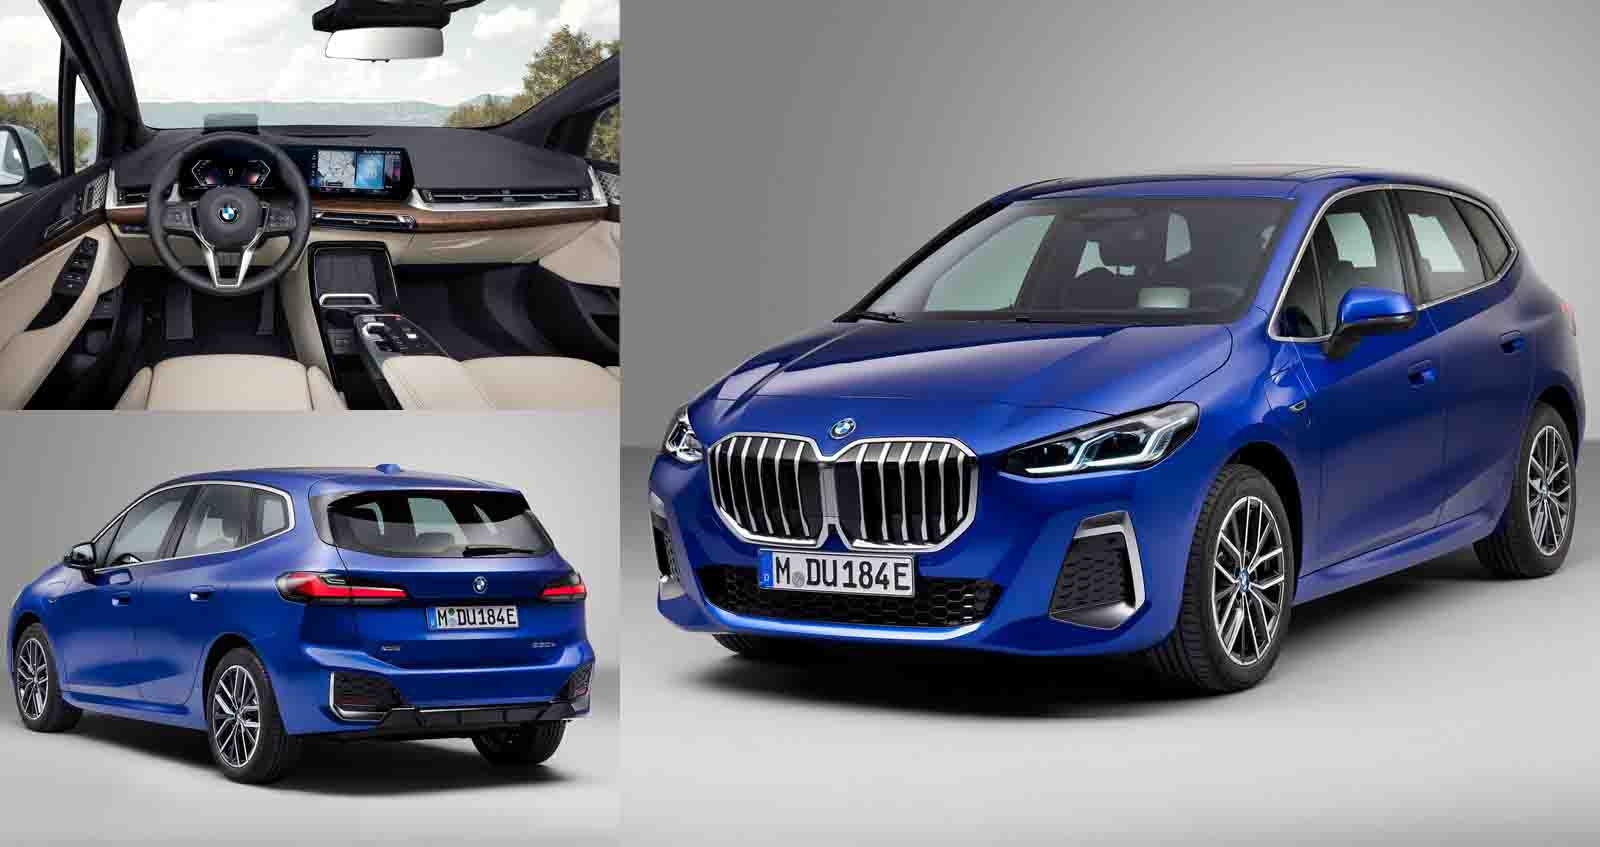 เปิดตัว BMW 2 Series Active Tourer พร้อมขุมพลัง เบนซิน – ดีเซล และ Plug-in Hybrid  ปรับปรุงทั้งภายนอก และ ภายใน